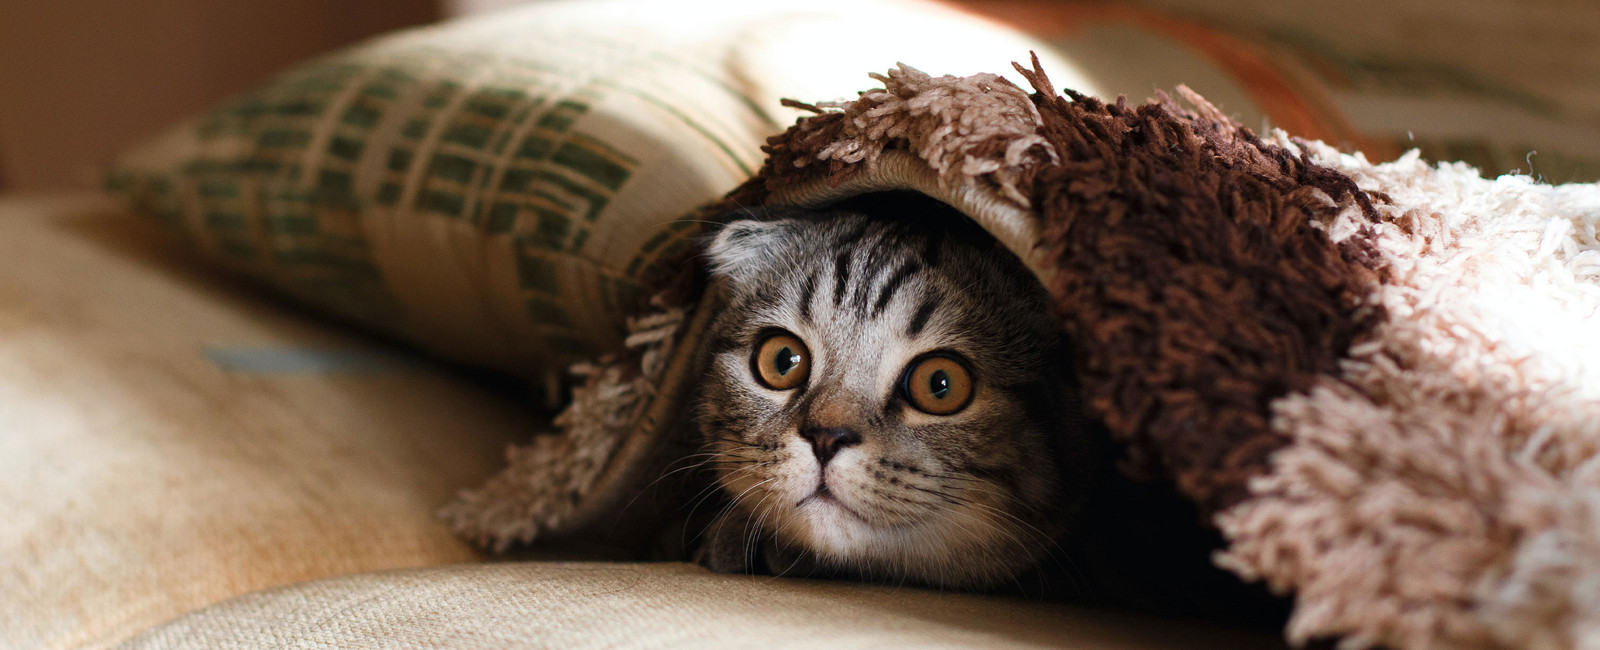 Katze guckt unter einer Decke hervor